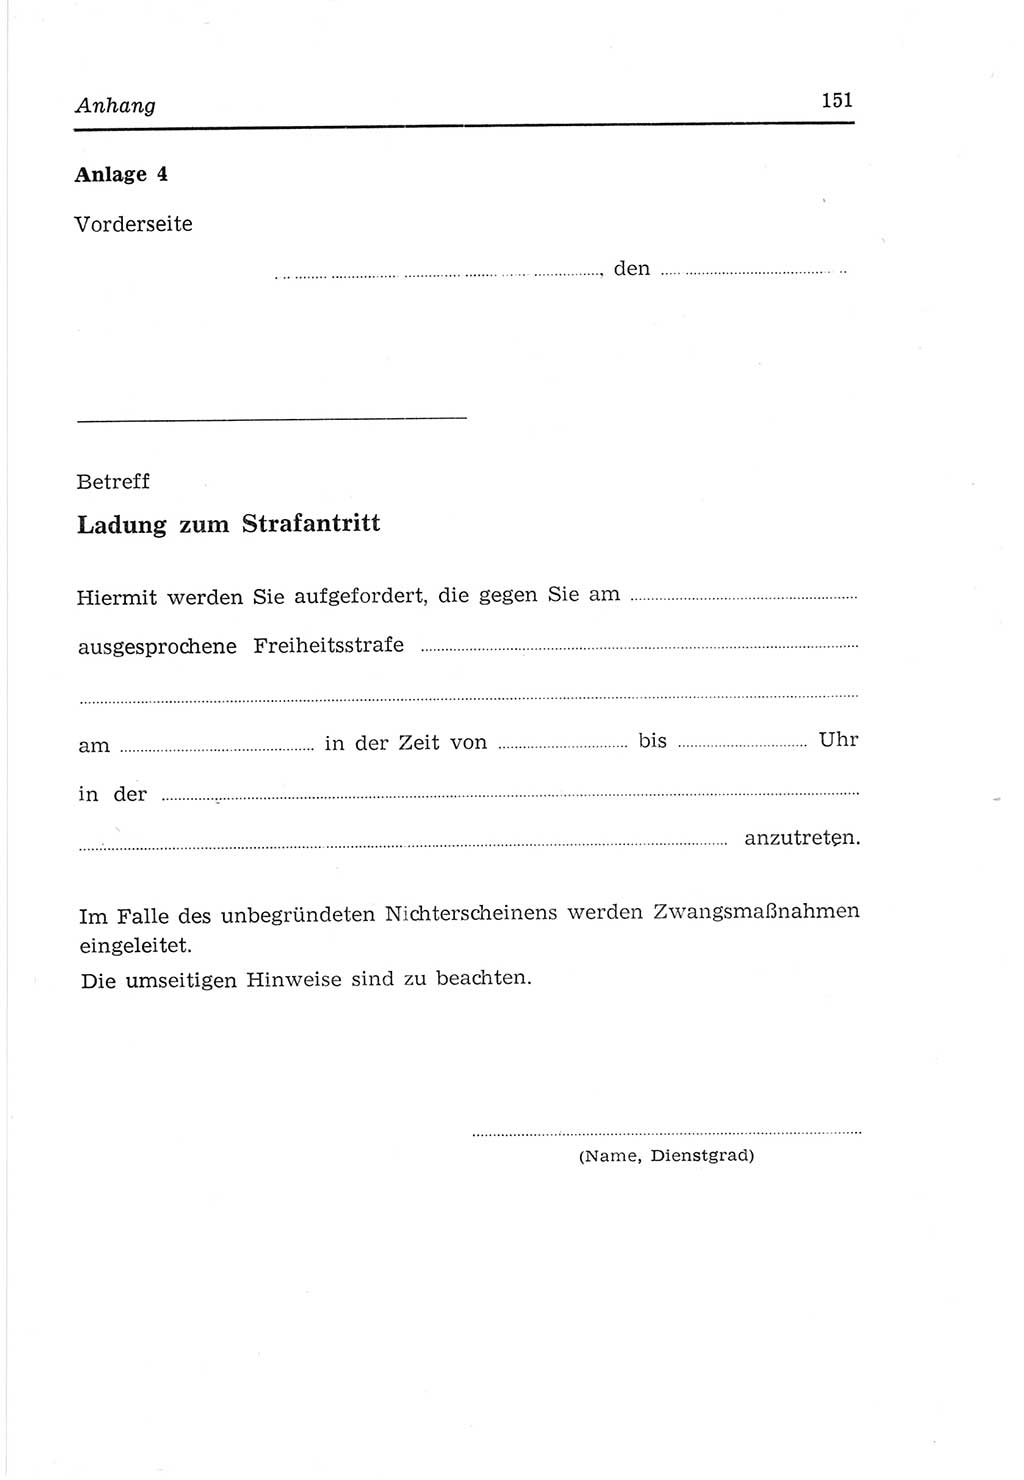 Strafvollzugs- und Wiedereingliederungsgesetz (SVWG) der Deutschen Demokratischen Republik (DDR) 1968, Seite 151 (SVWG DDR 1968, S. 151)